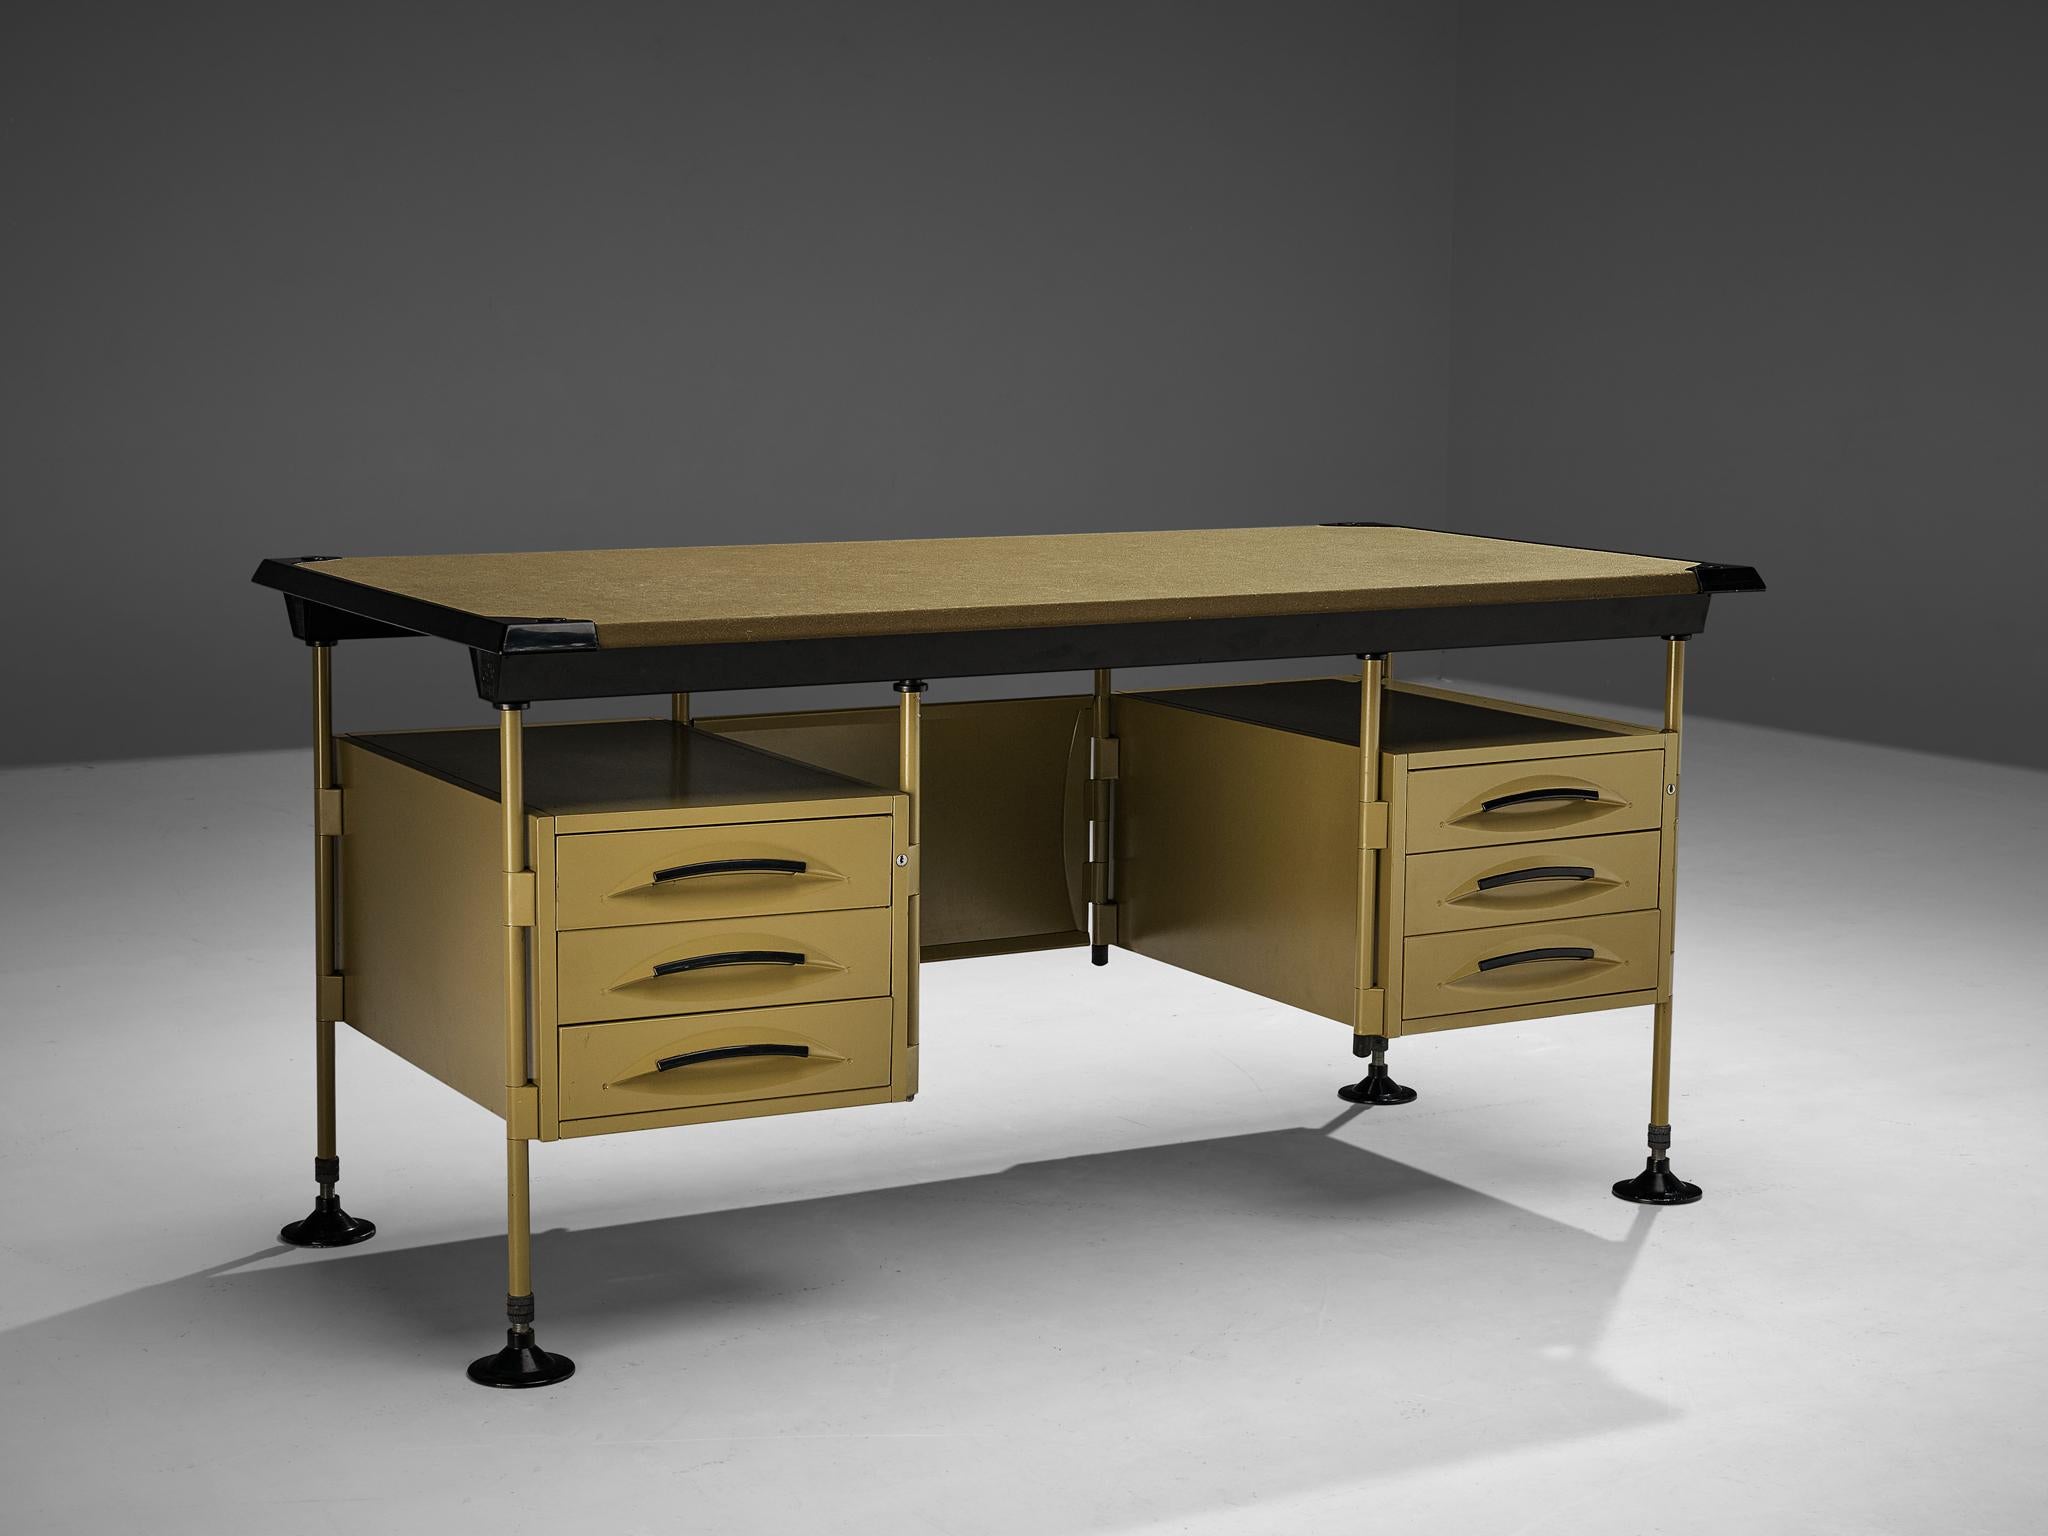 Italian Studio BBPR for Olivetti 'Spazio' Desk with Drawers